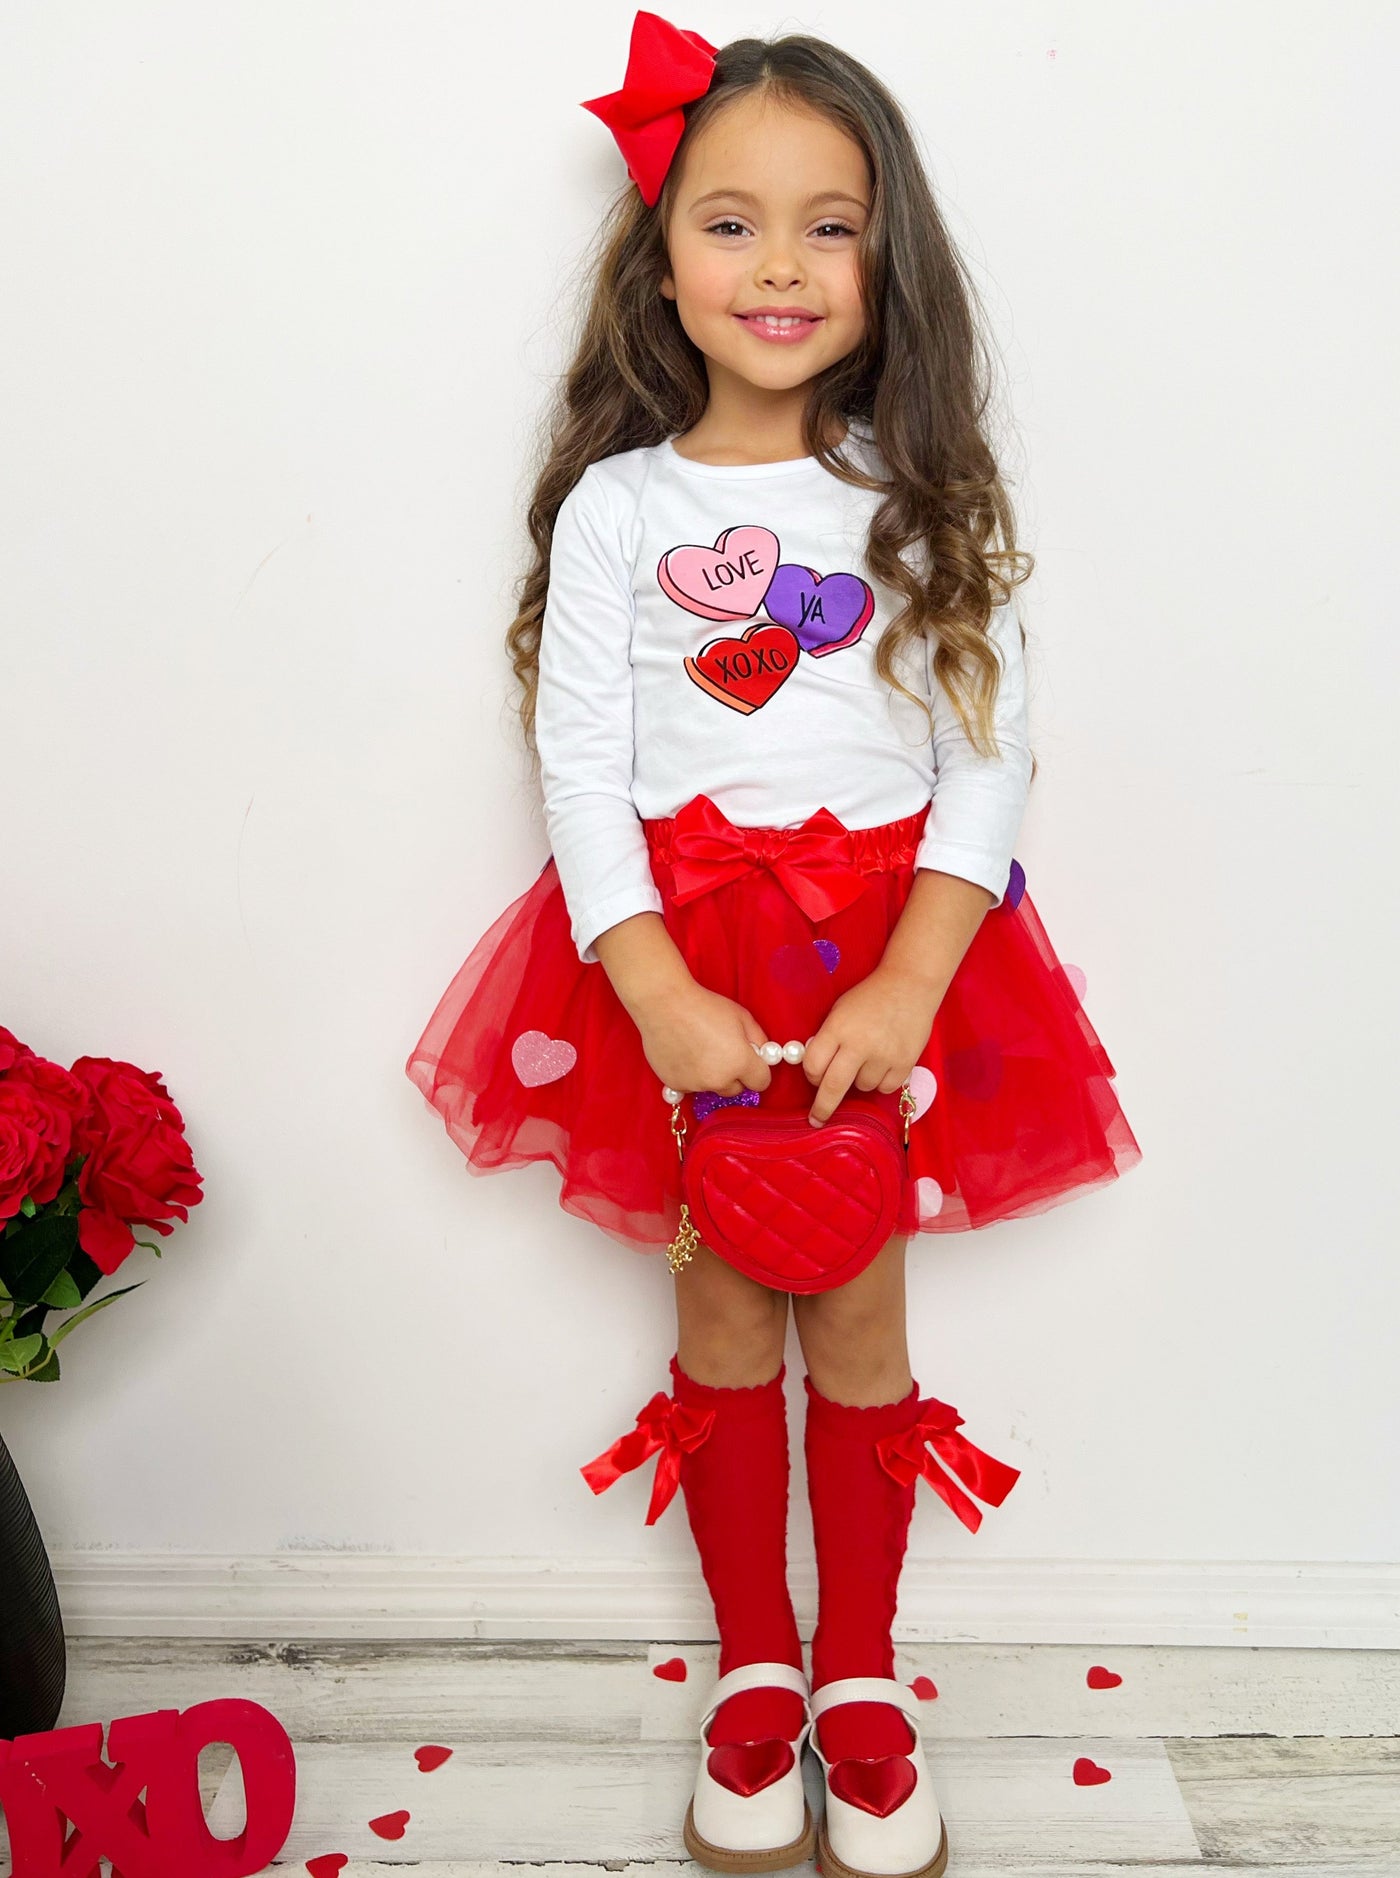 Kids Valentine's Clothes | Girls Love Ya Sparkle Heart Tutu Skirt Set